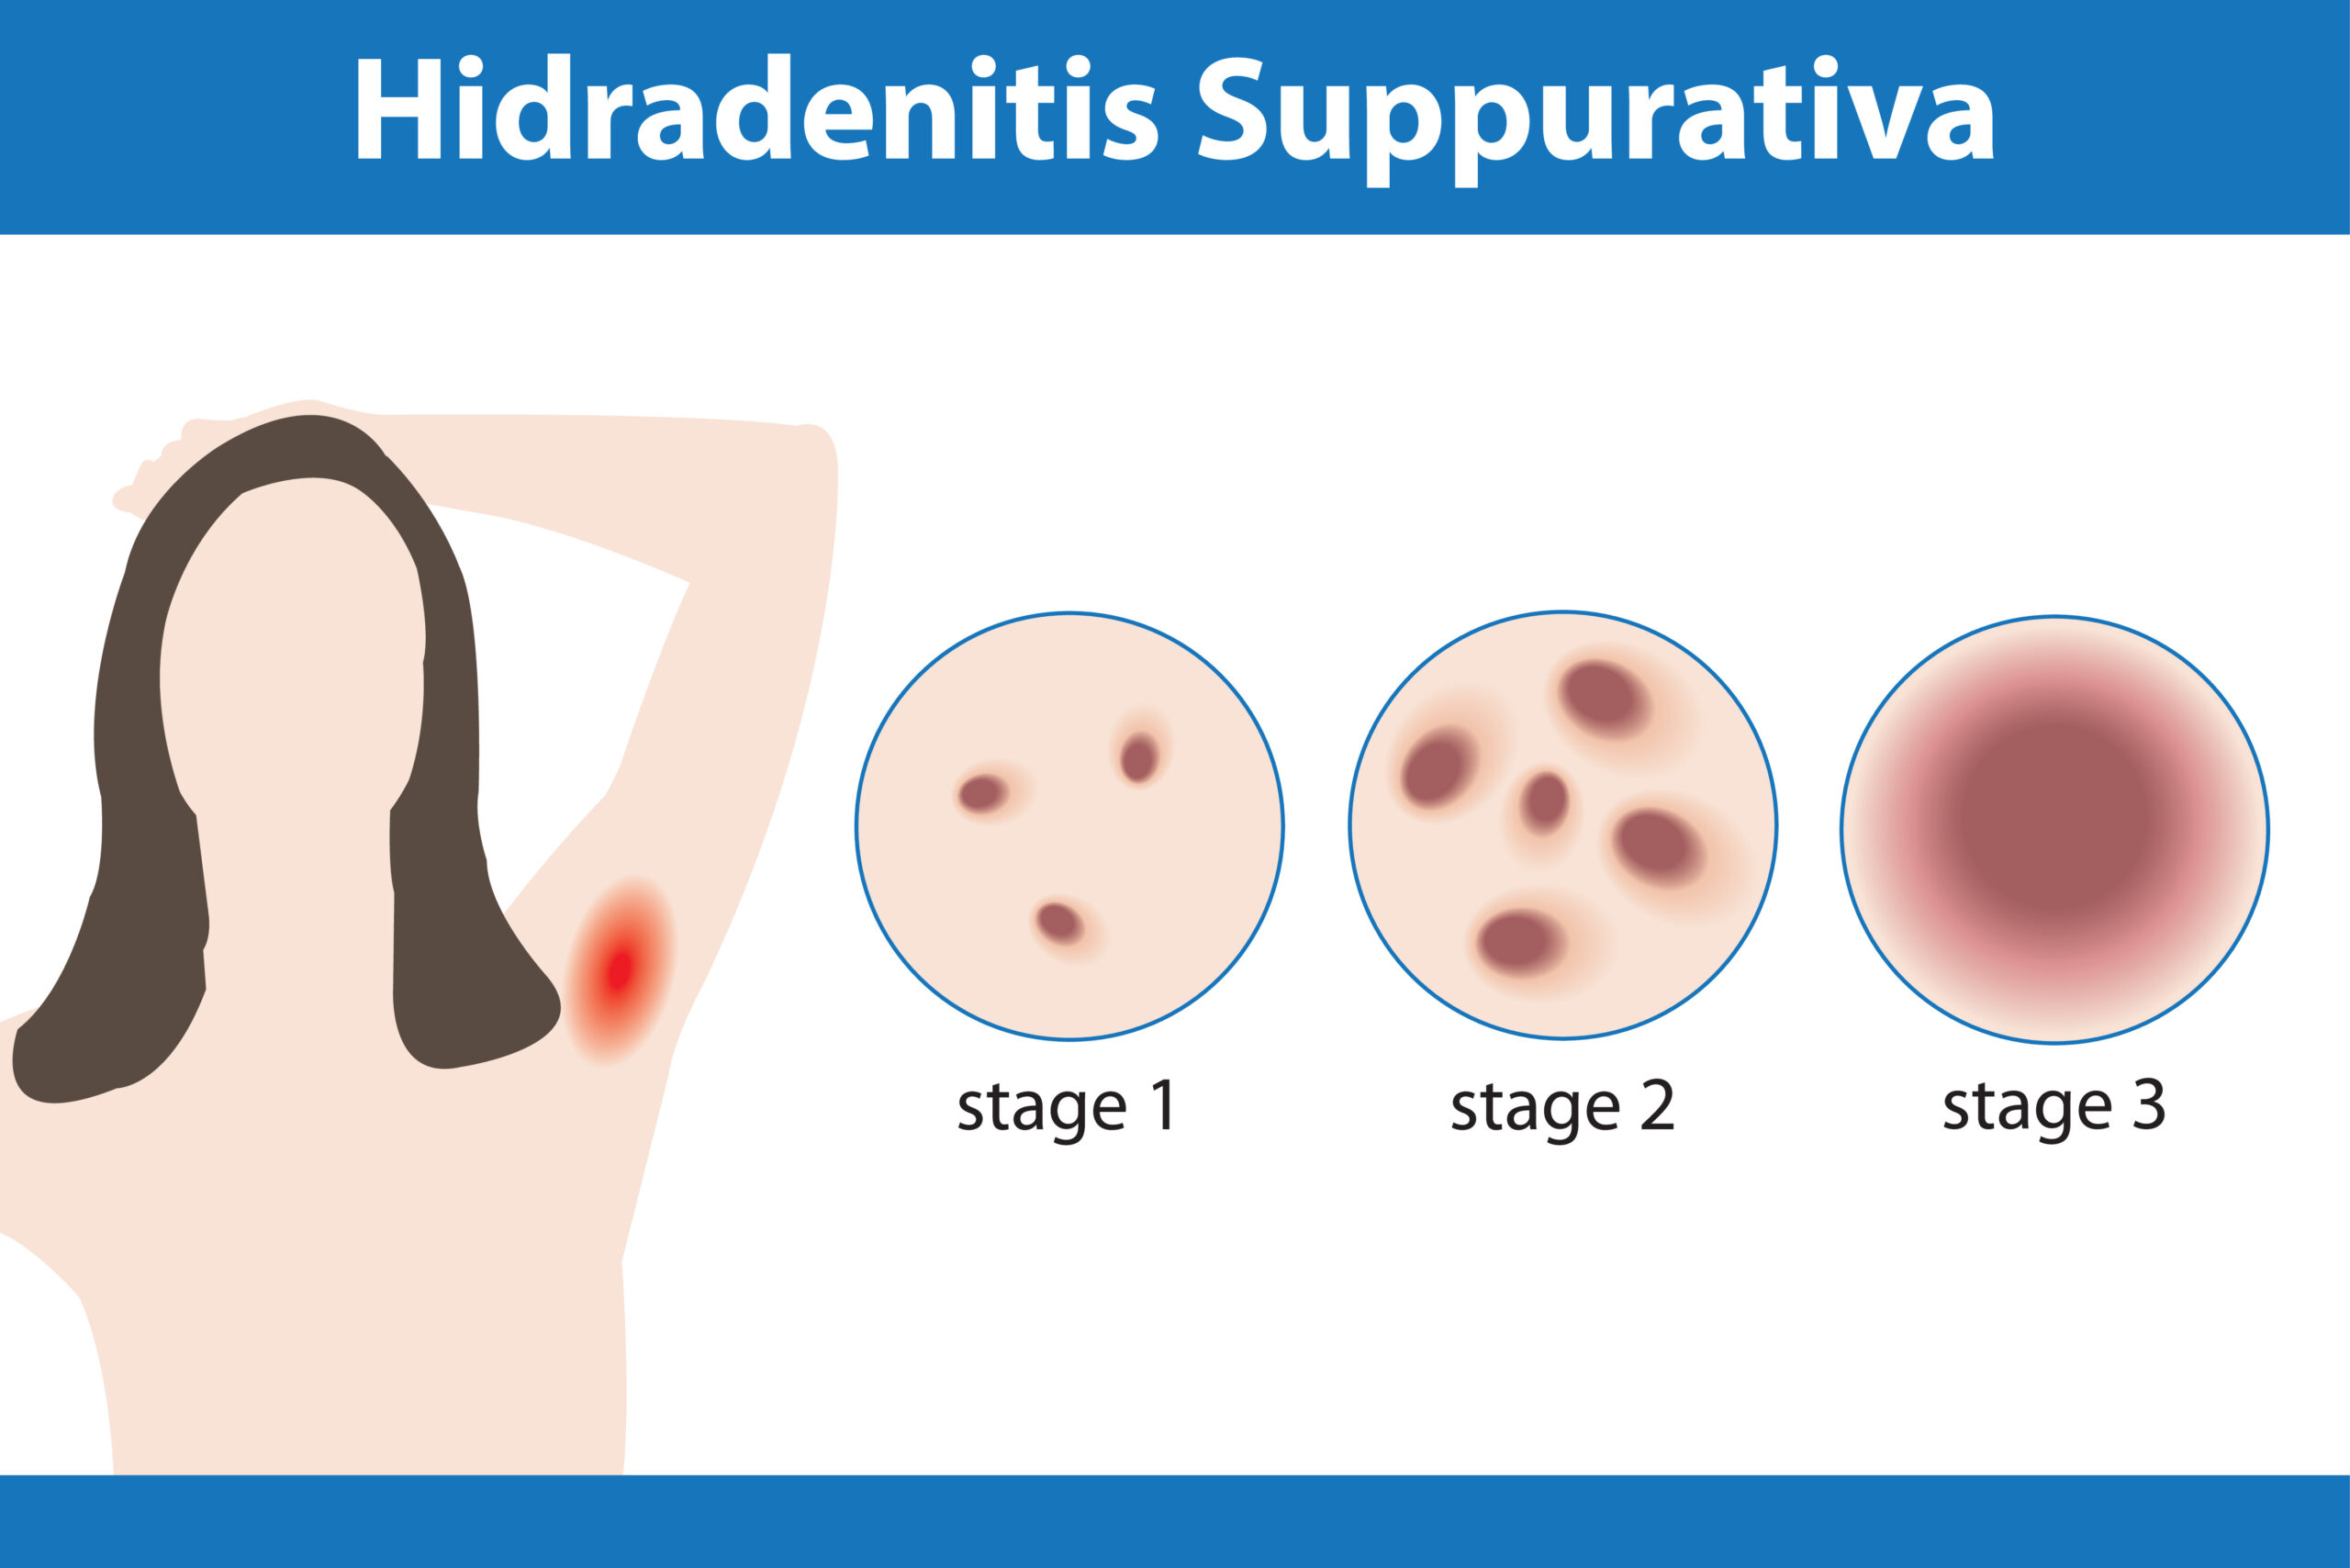 Hidradenitis Suppurativa Treatment